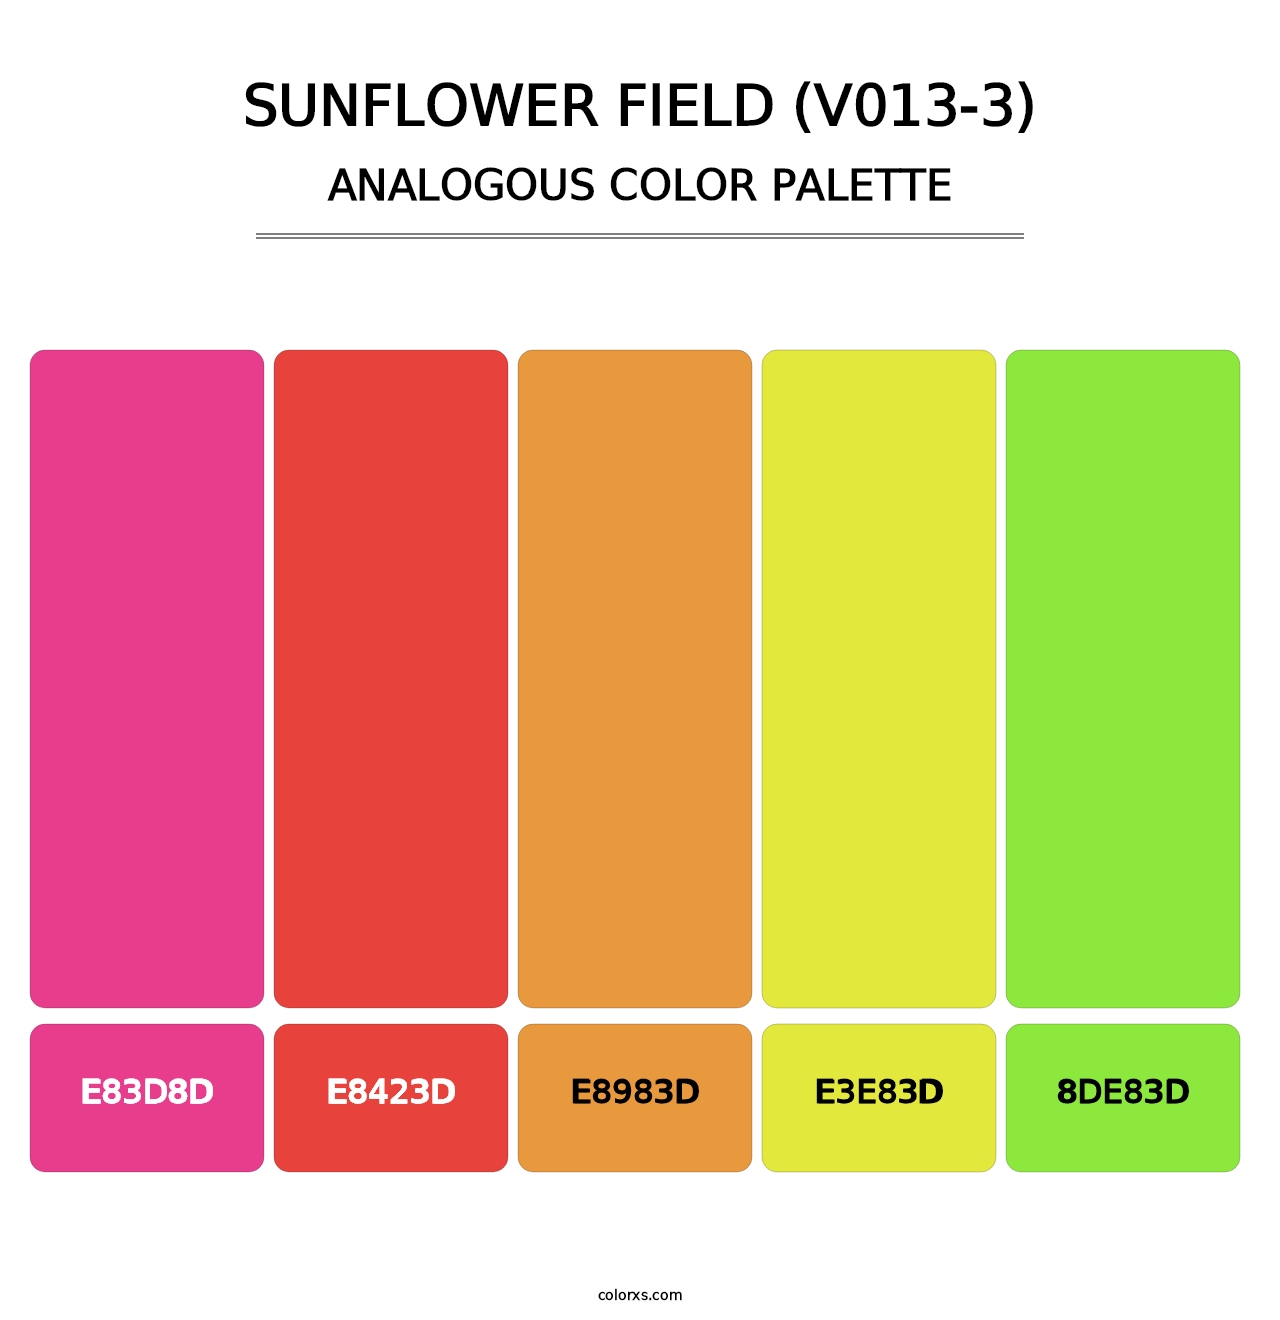 Sunflower Field (V013-3) - Analogous Color Palette